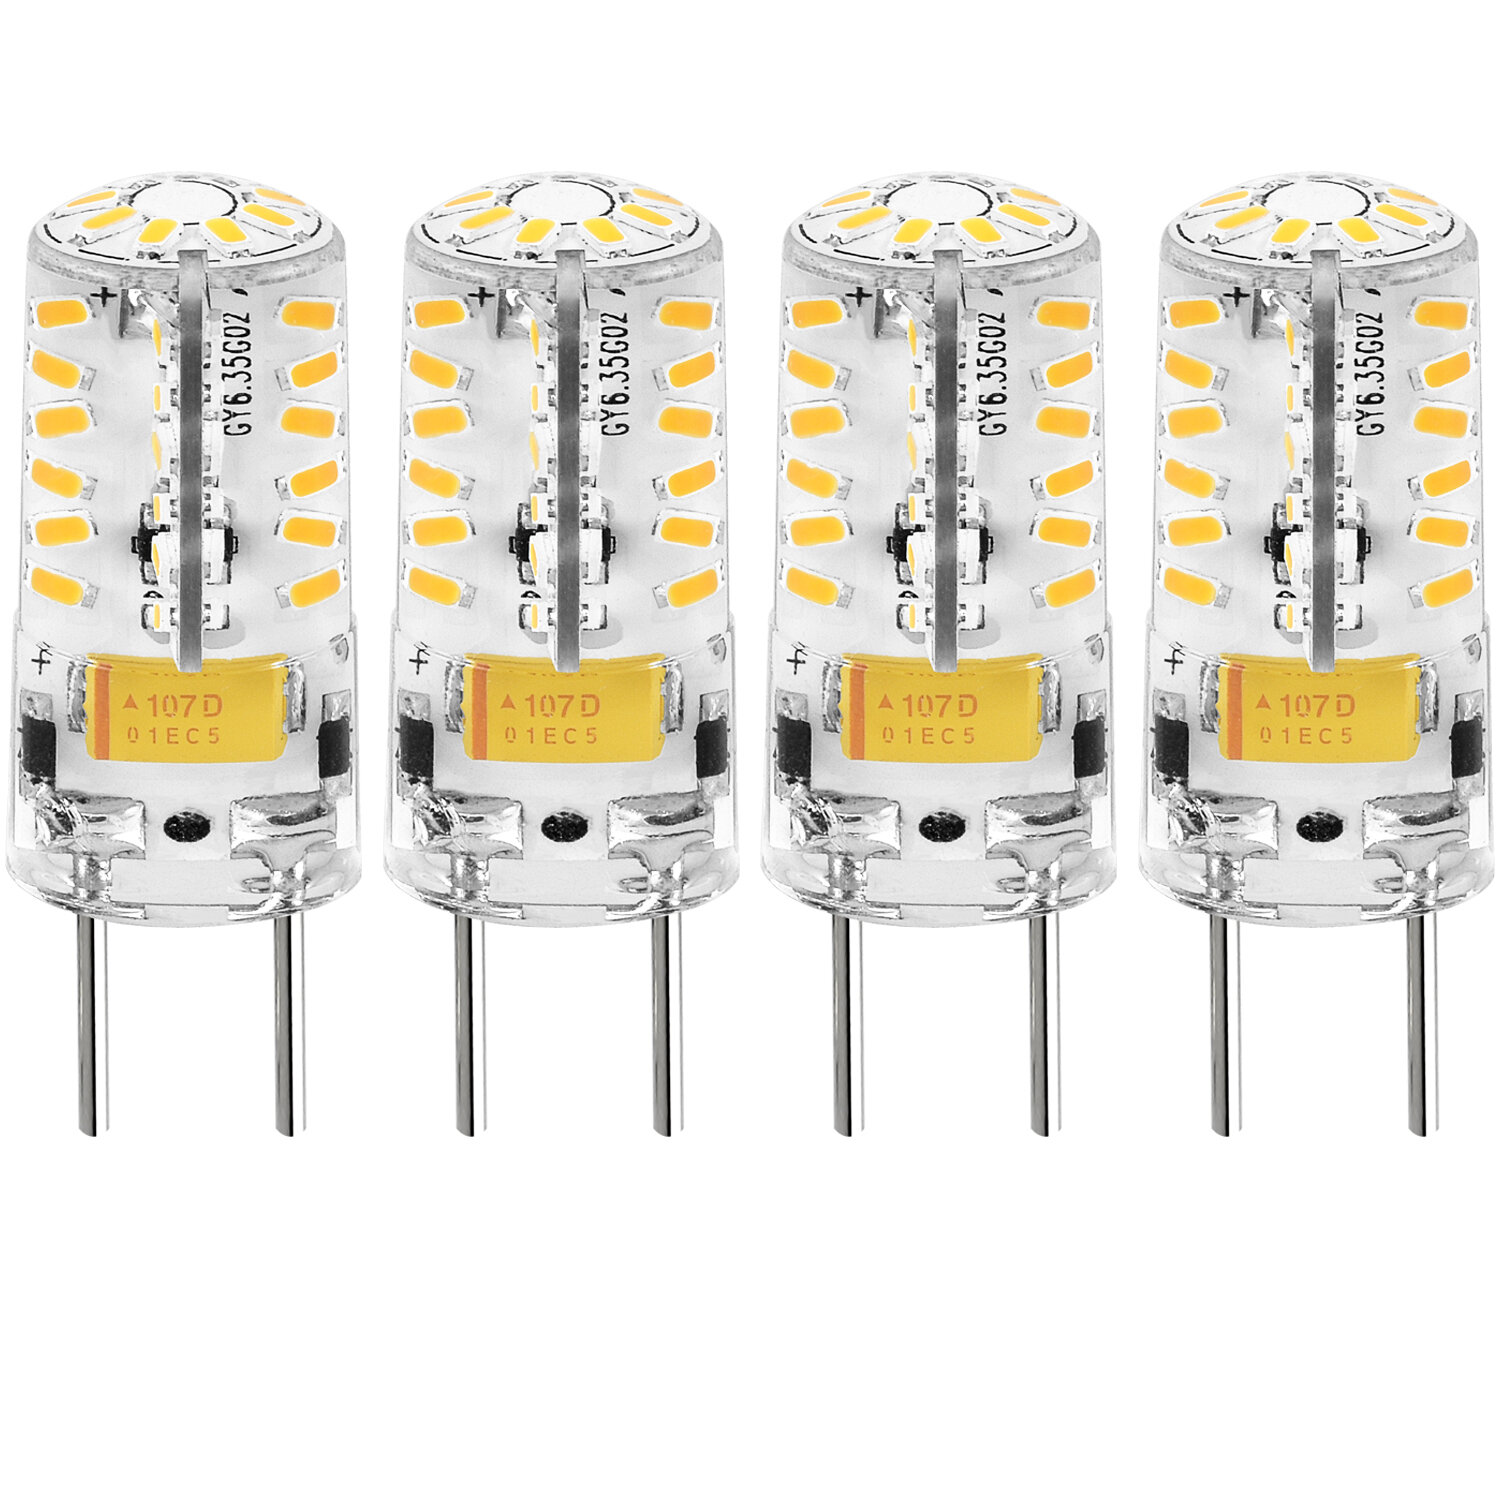 Inspirere horisont knus Luxrite 35 Watt Equivalent T4 GY6.35/Bi-pin 2700K LED Bulb | Wayfair